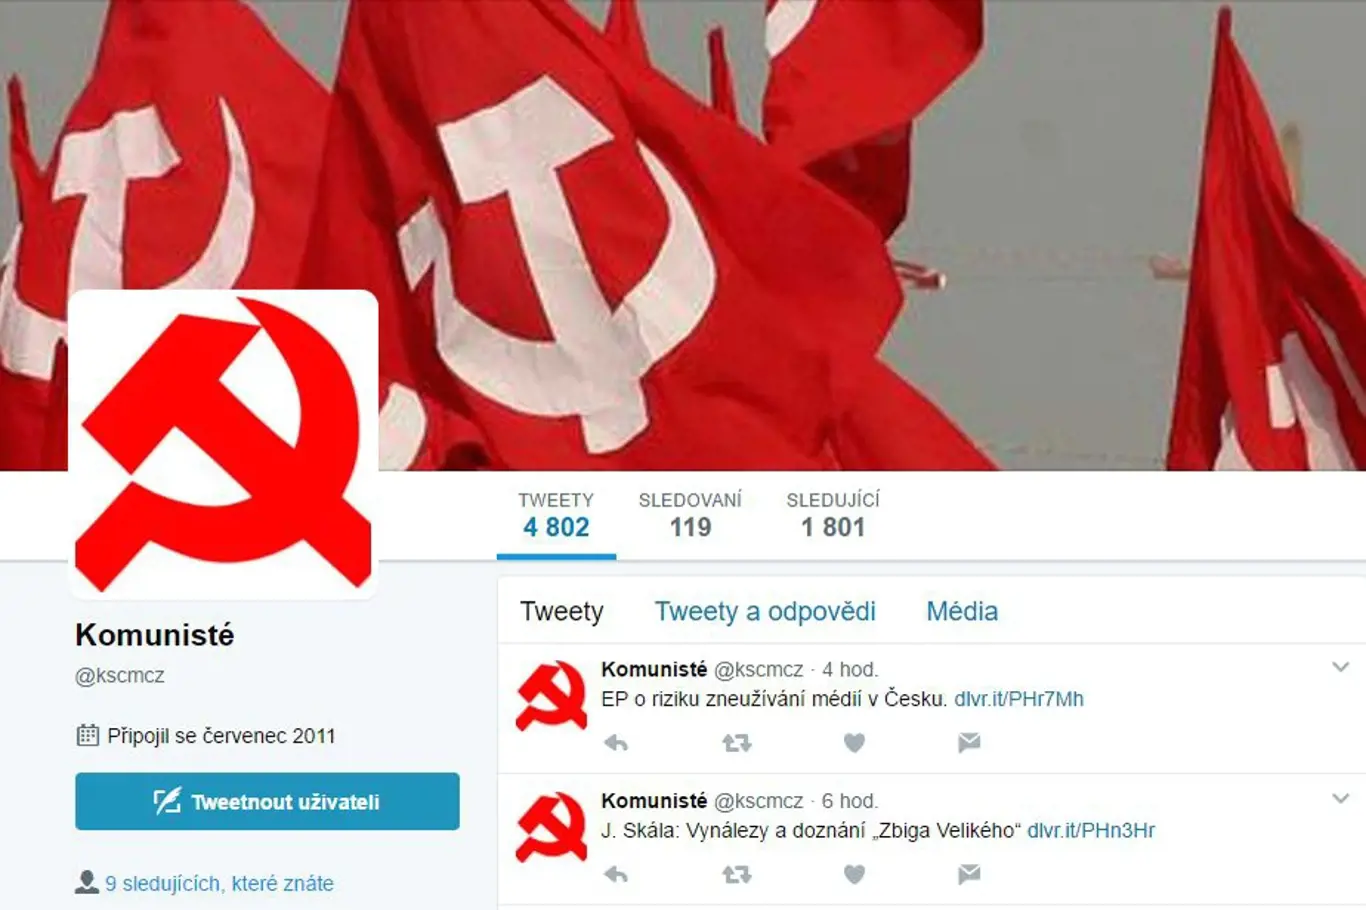 Twitterový účet, k němuž se KSČM oficiálně nehlásí